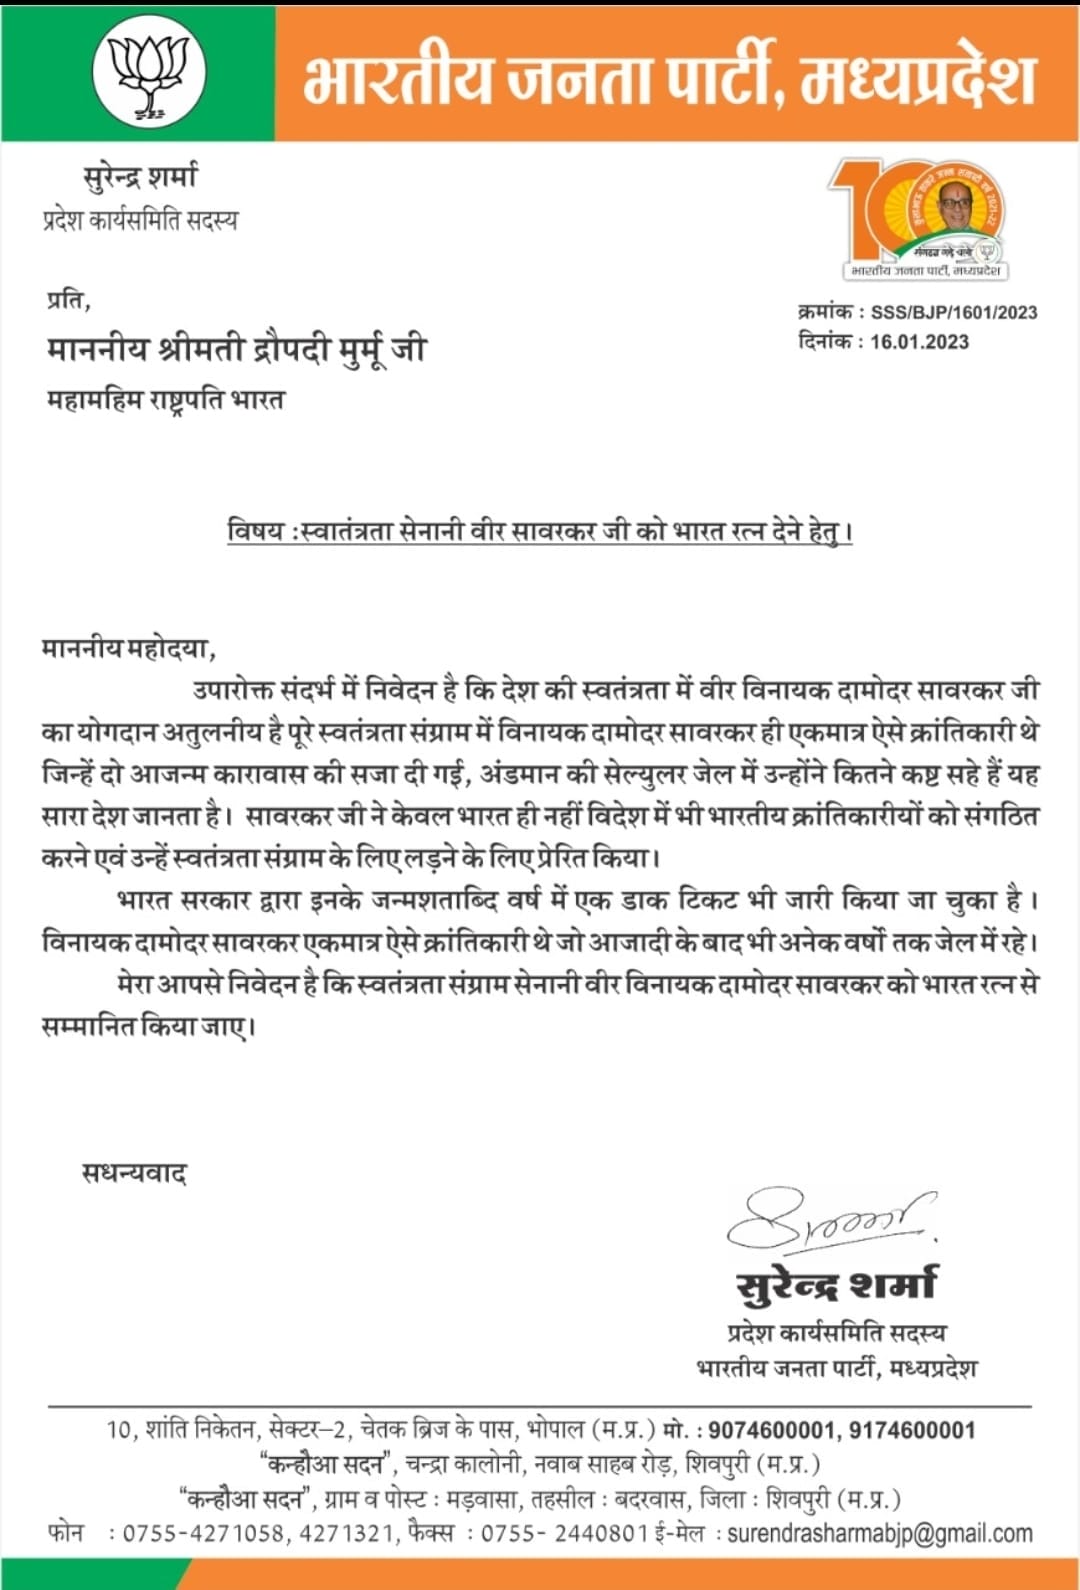 फिर उठी वीर सावरकर को भारत रत्न देने की मांग, बीजेपी नेता सुरेंद्र शर्मा ने राष्ट्रपति को लिखा पत्र